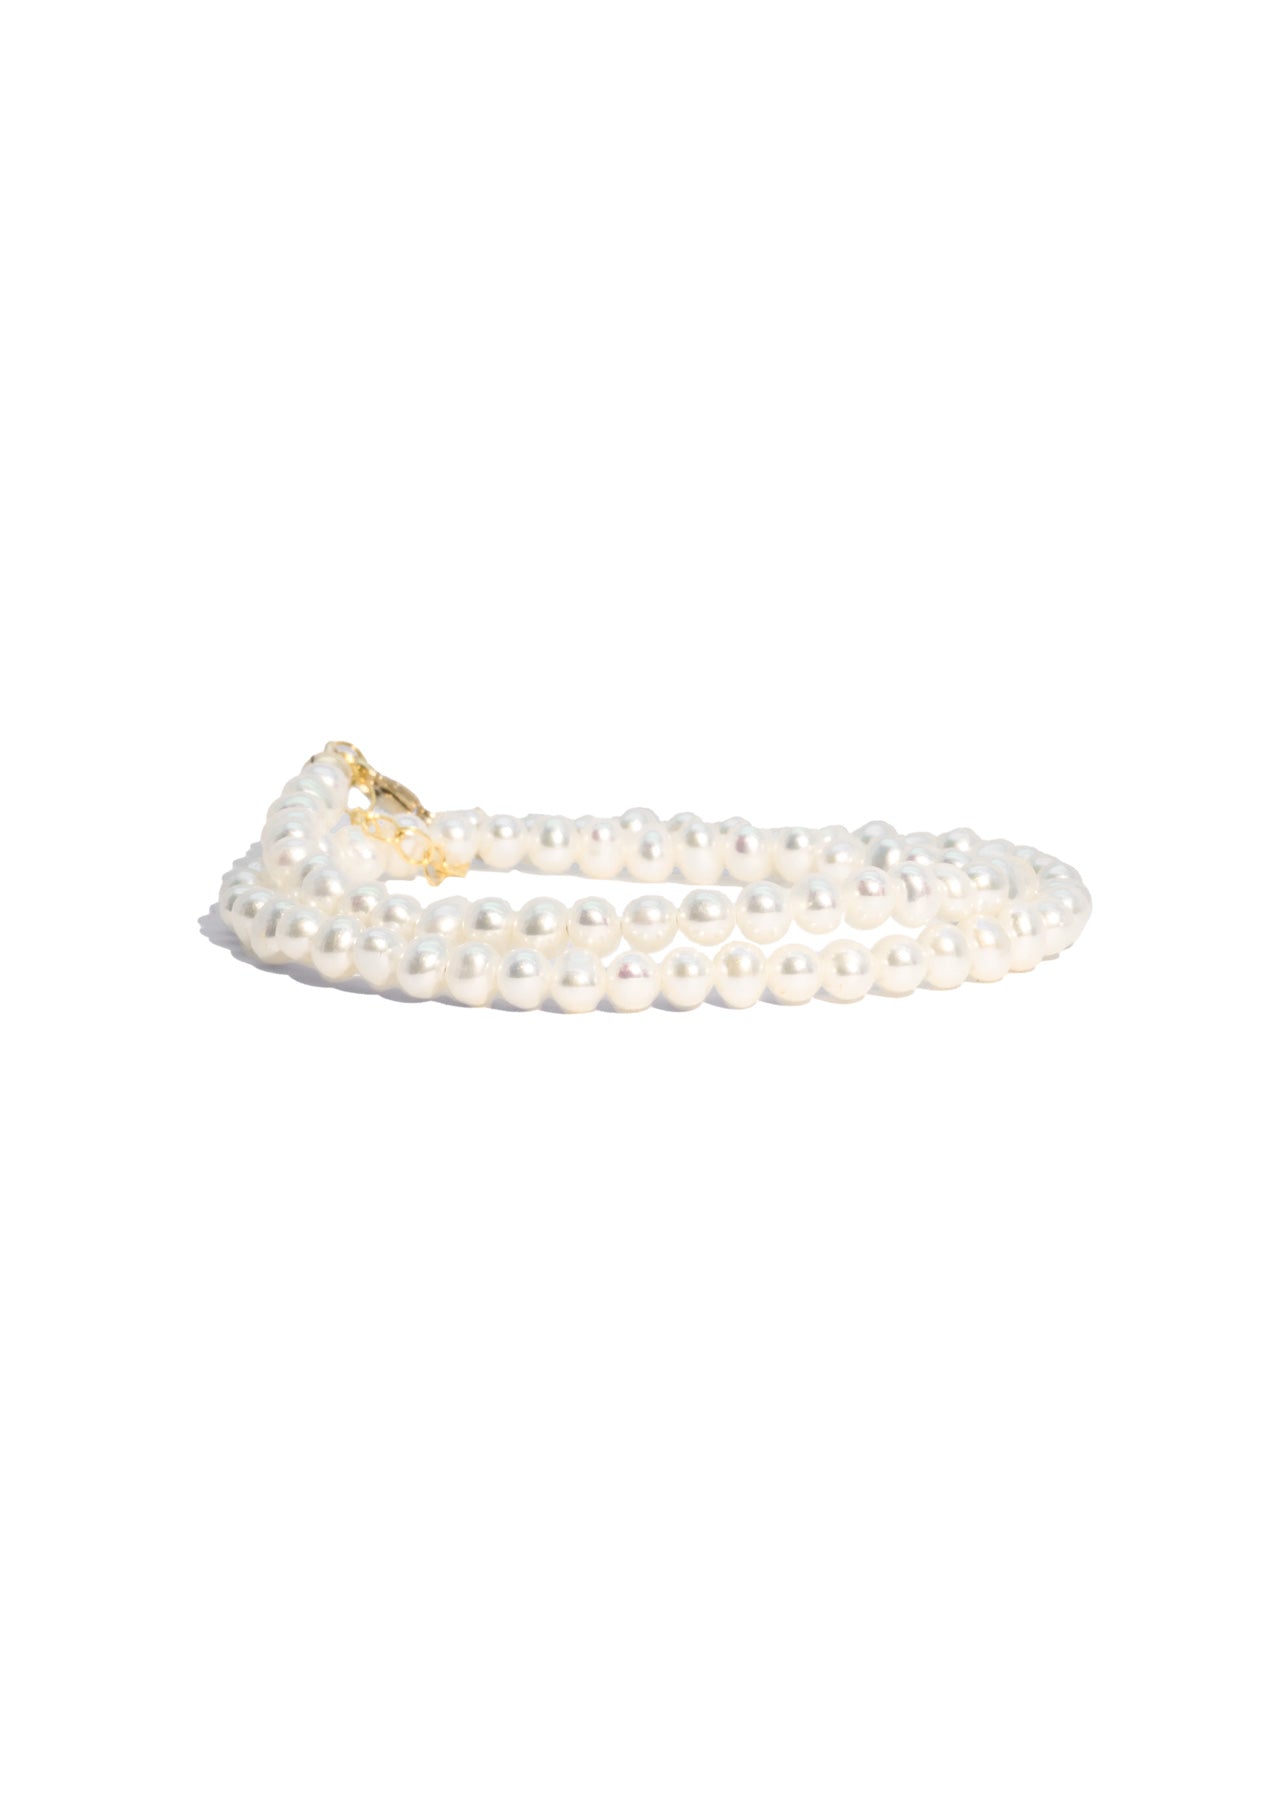 Pearl Wrap Bracelet  La De Da Jewelry